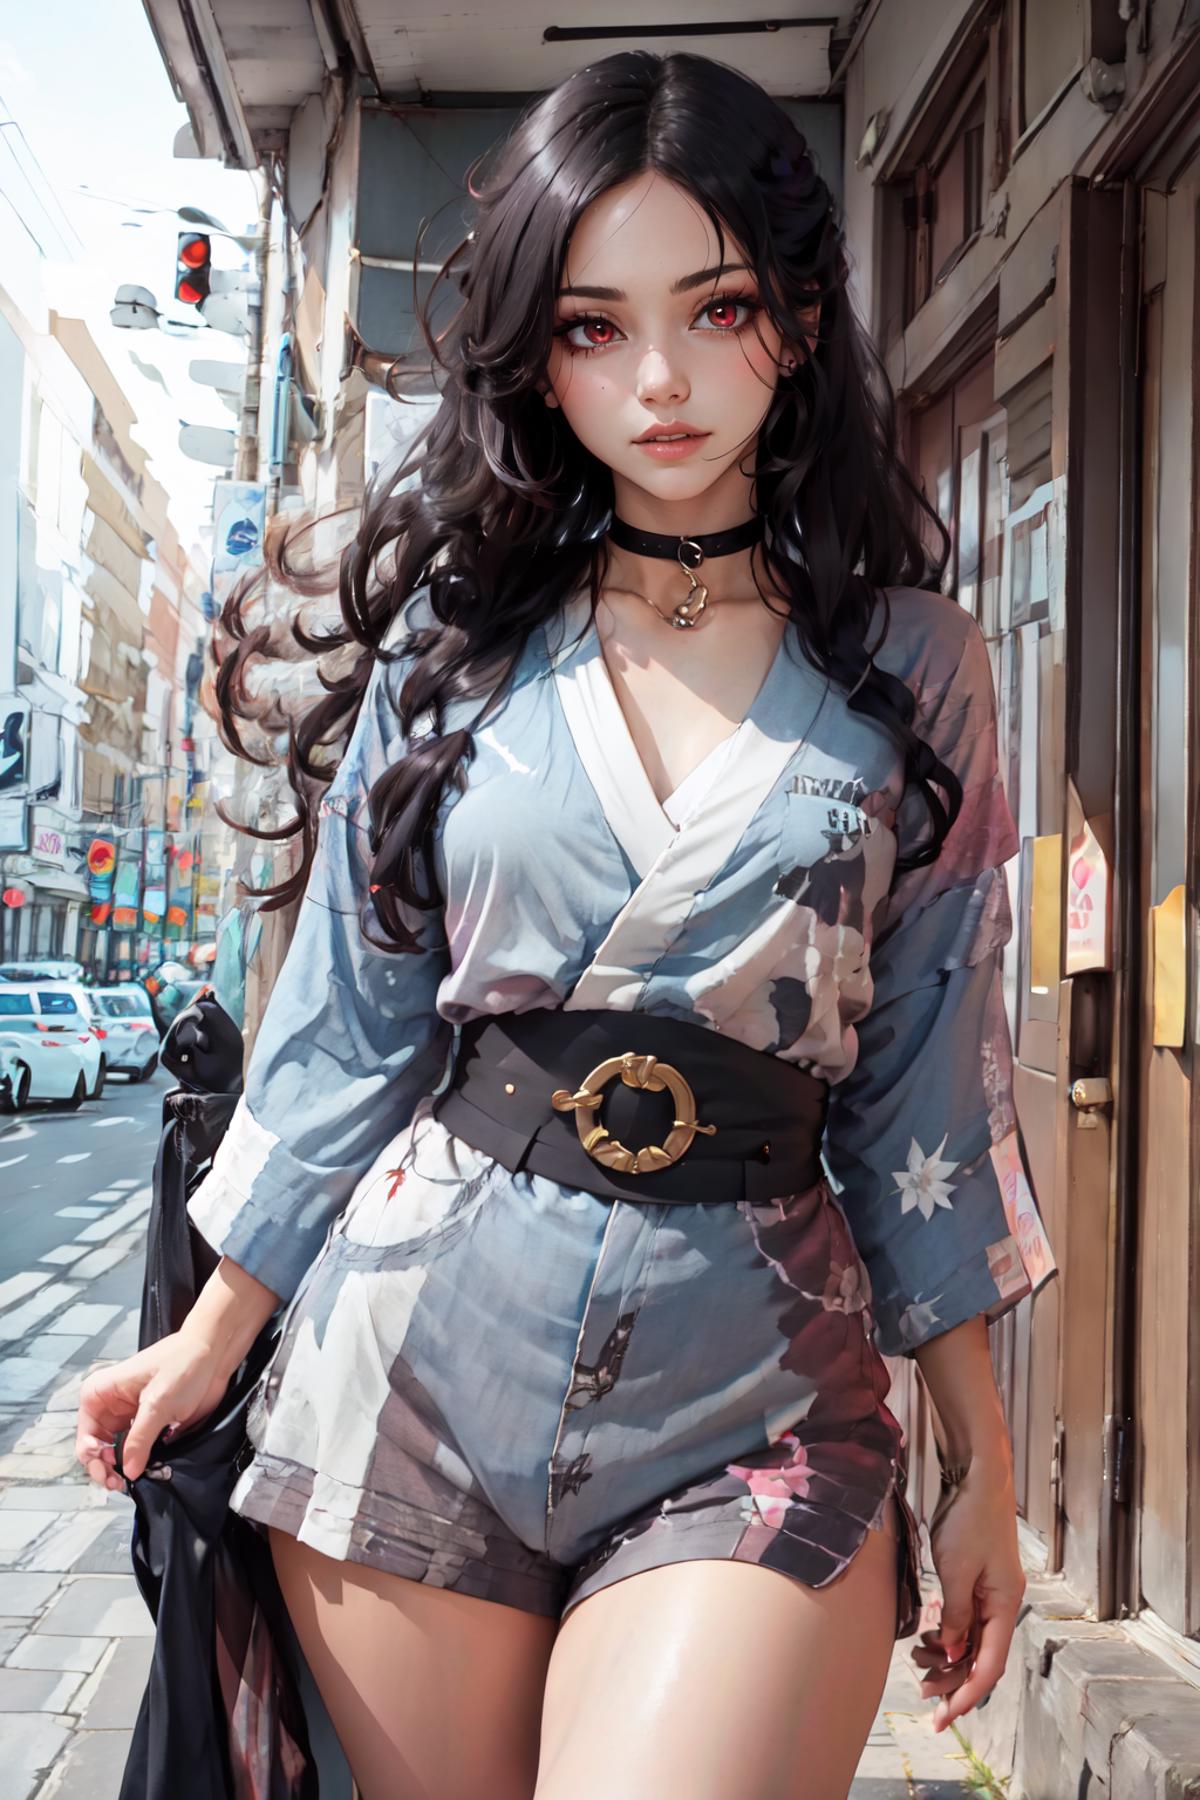 Kimono Clothes image by FallenIncursio